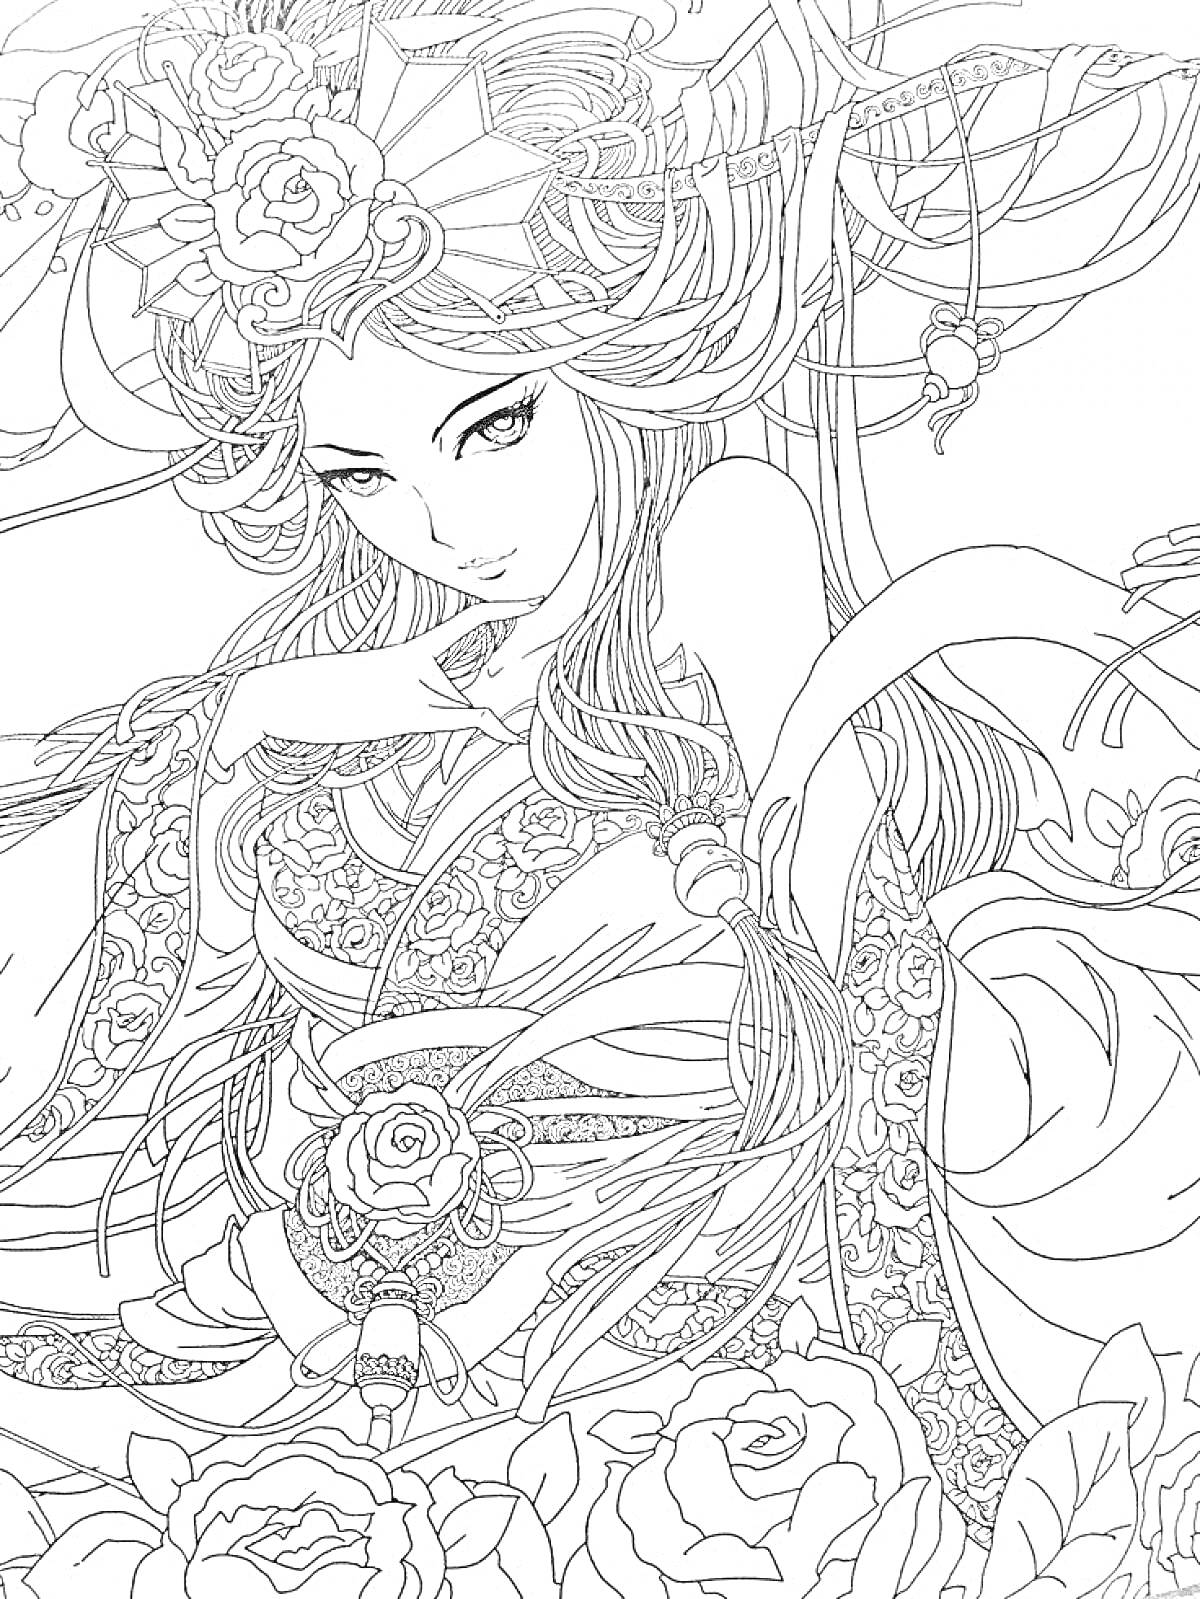 Девушка с цветами в волосах и традиционной одежде, окруженная узорами